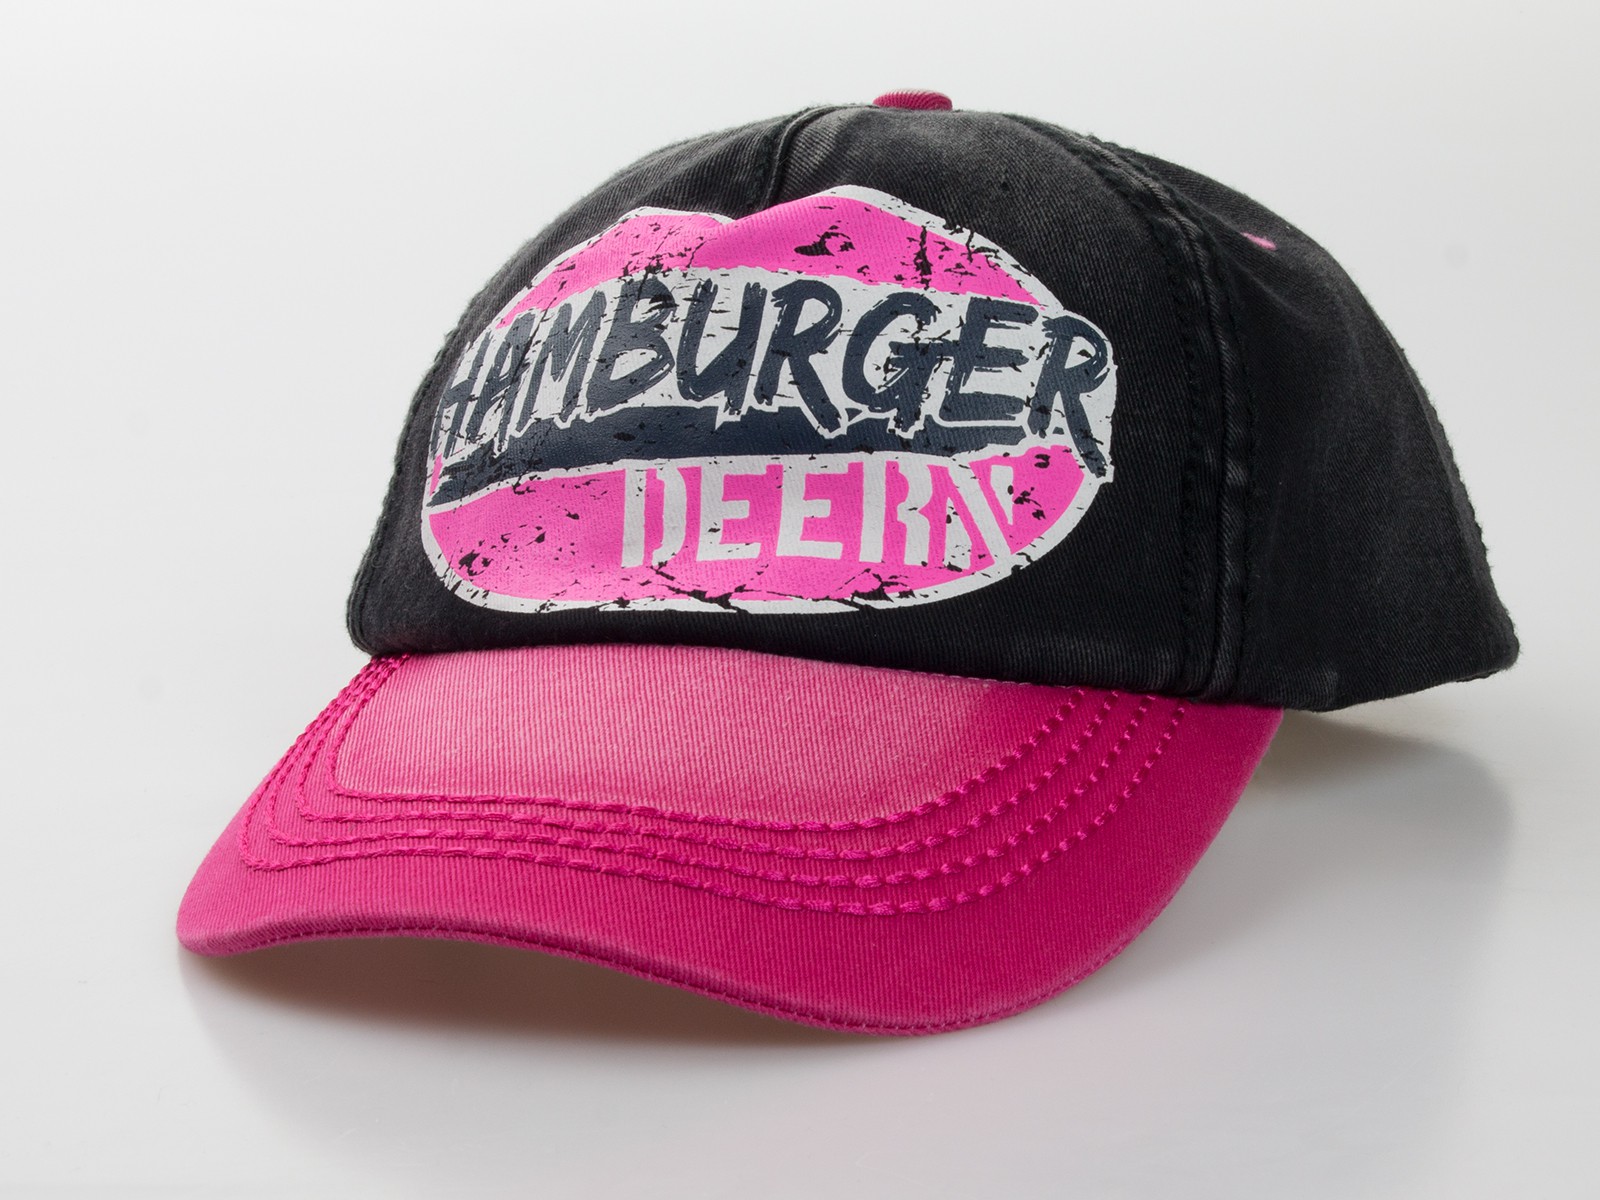 Baseball-Cap "Hamburger Deern" 